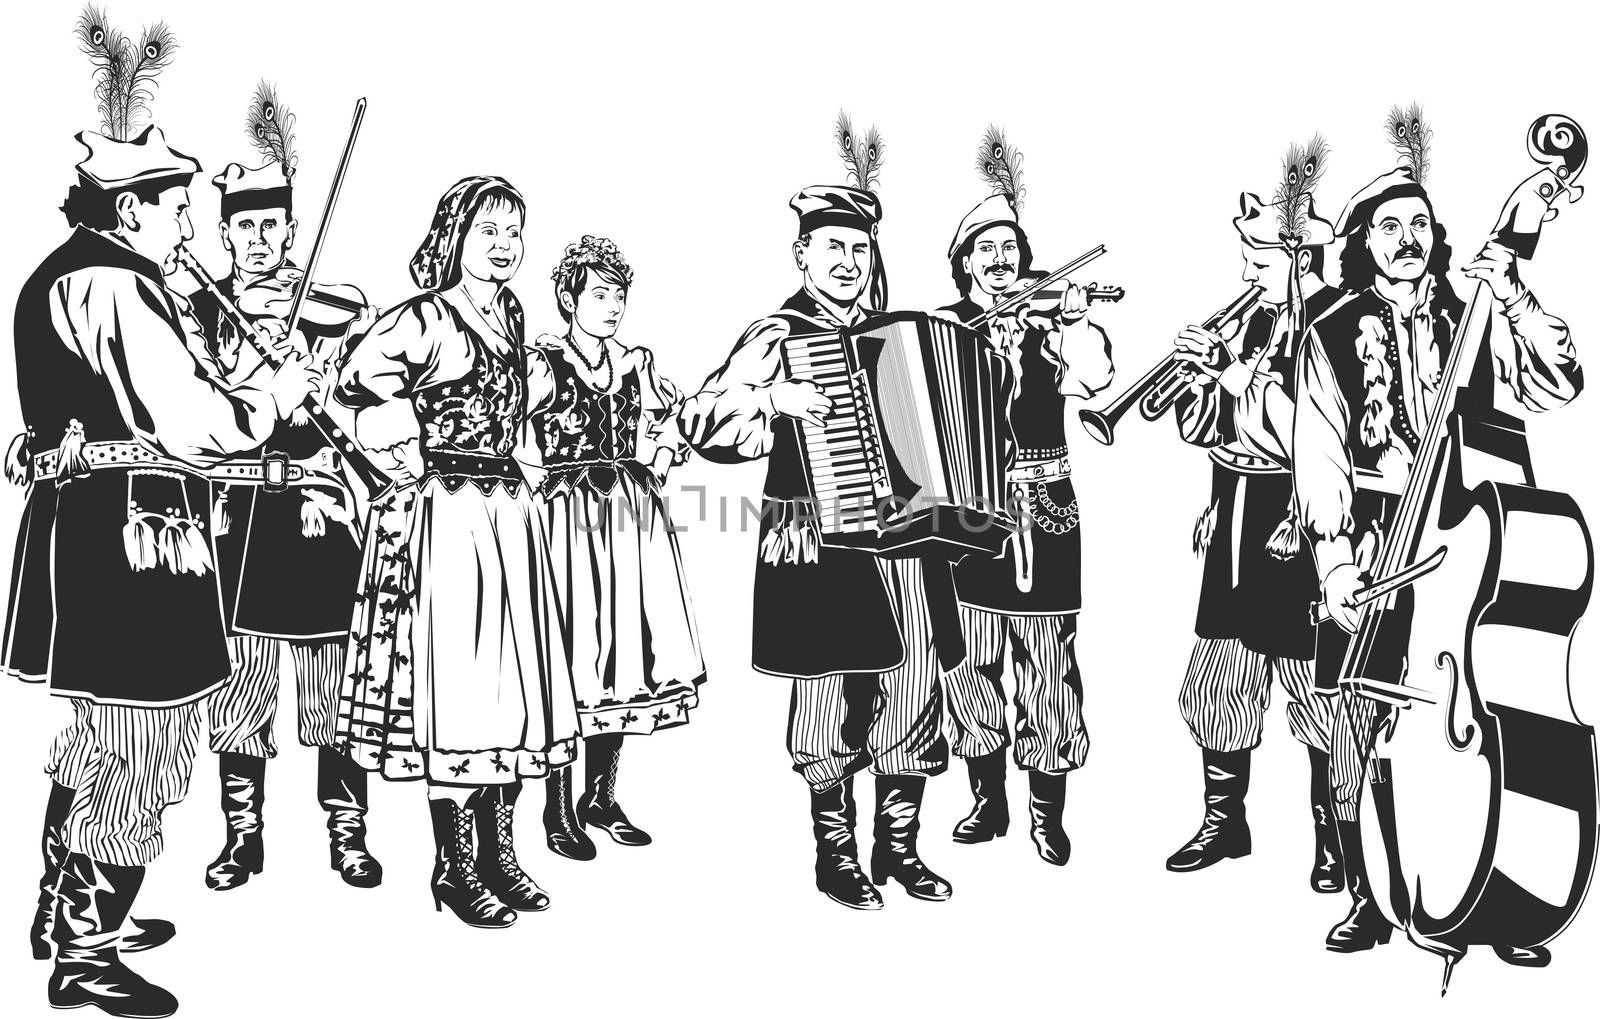 Polish Traditional Folk Band "Krakowiaki" as Black and White Vector Style Illustration Isolated on White. Raster Image.